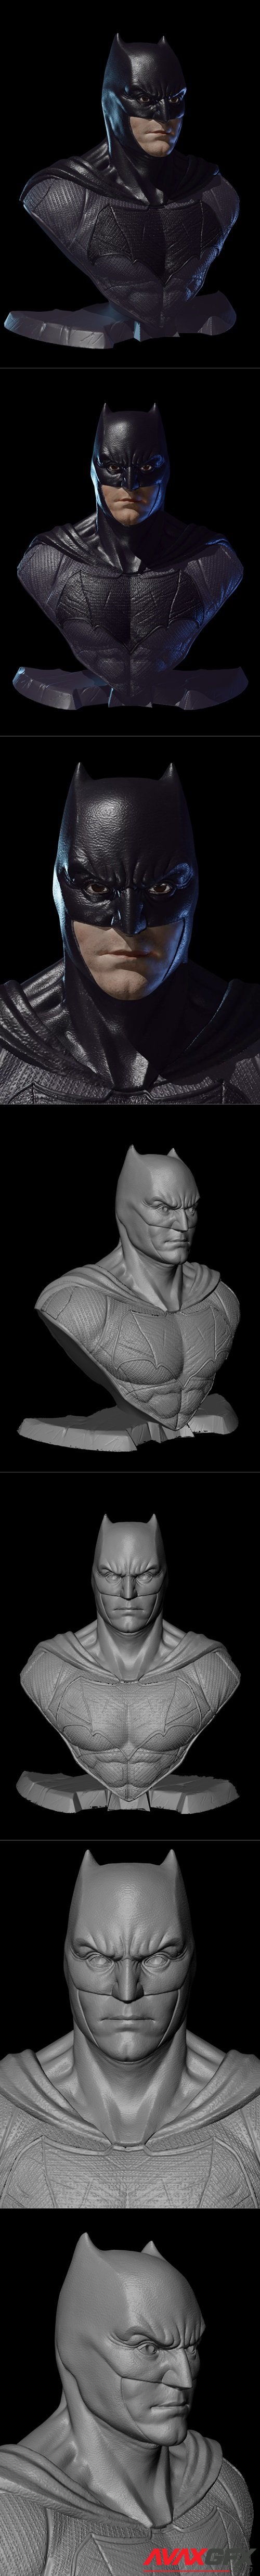 Batman Bust Justice League – 3D Printable STL